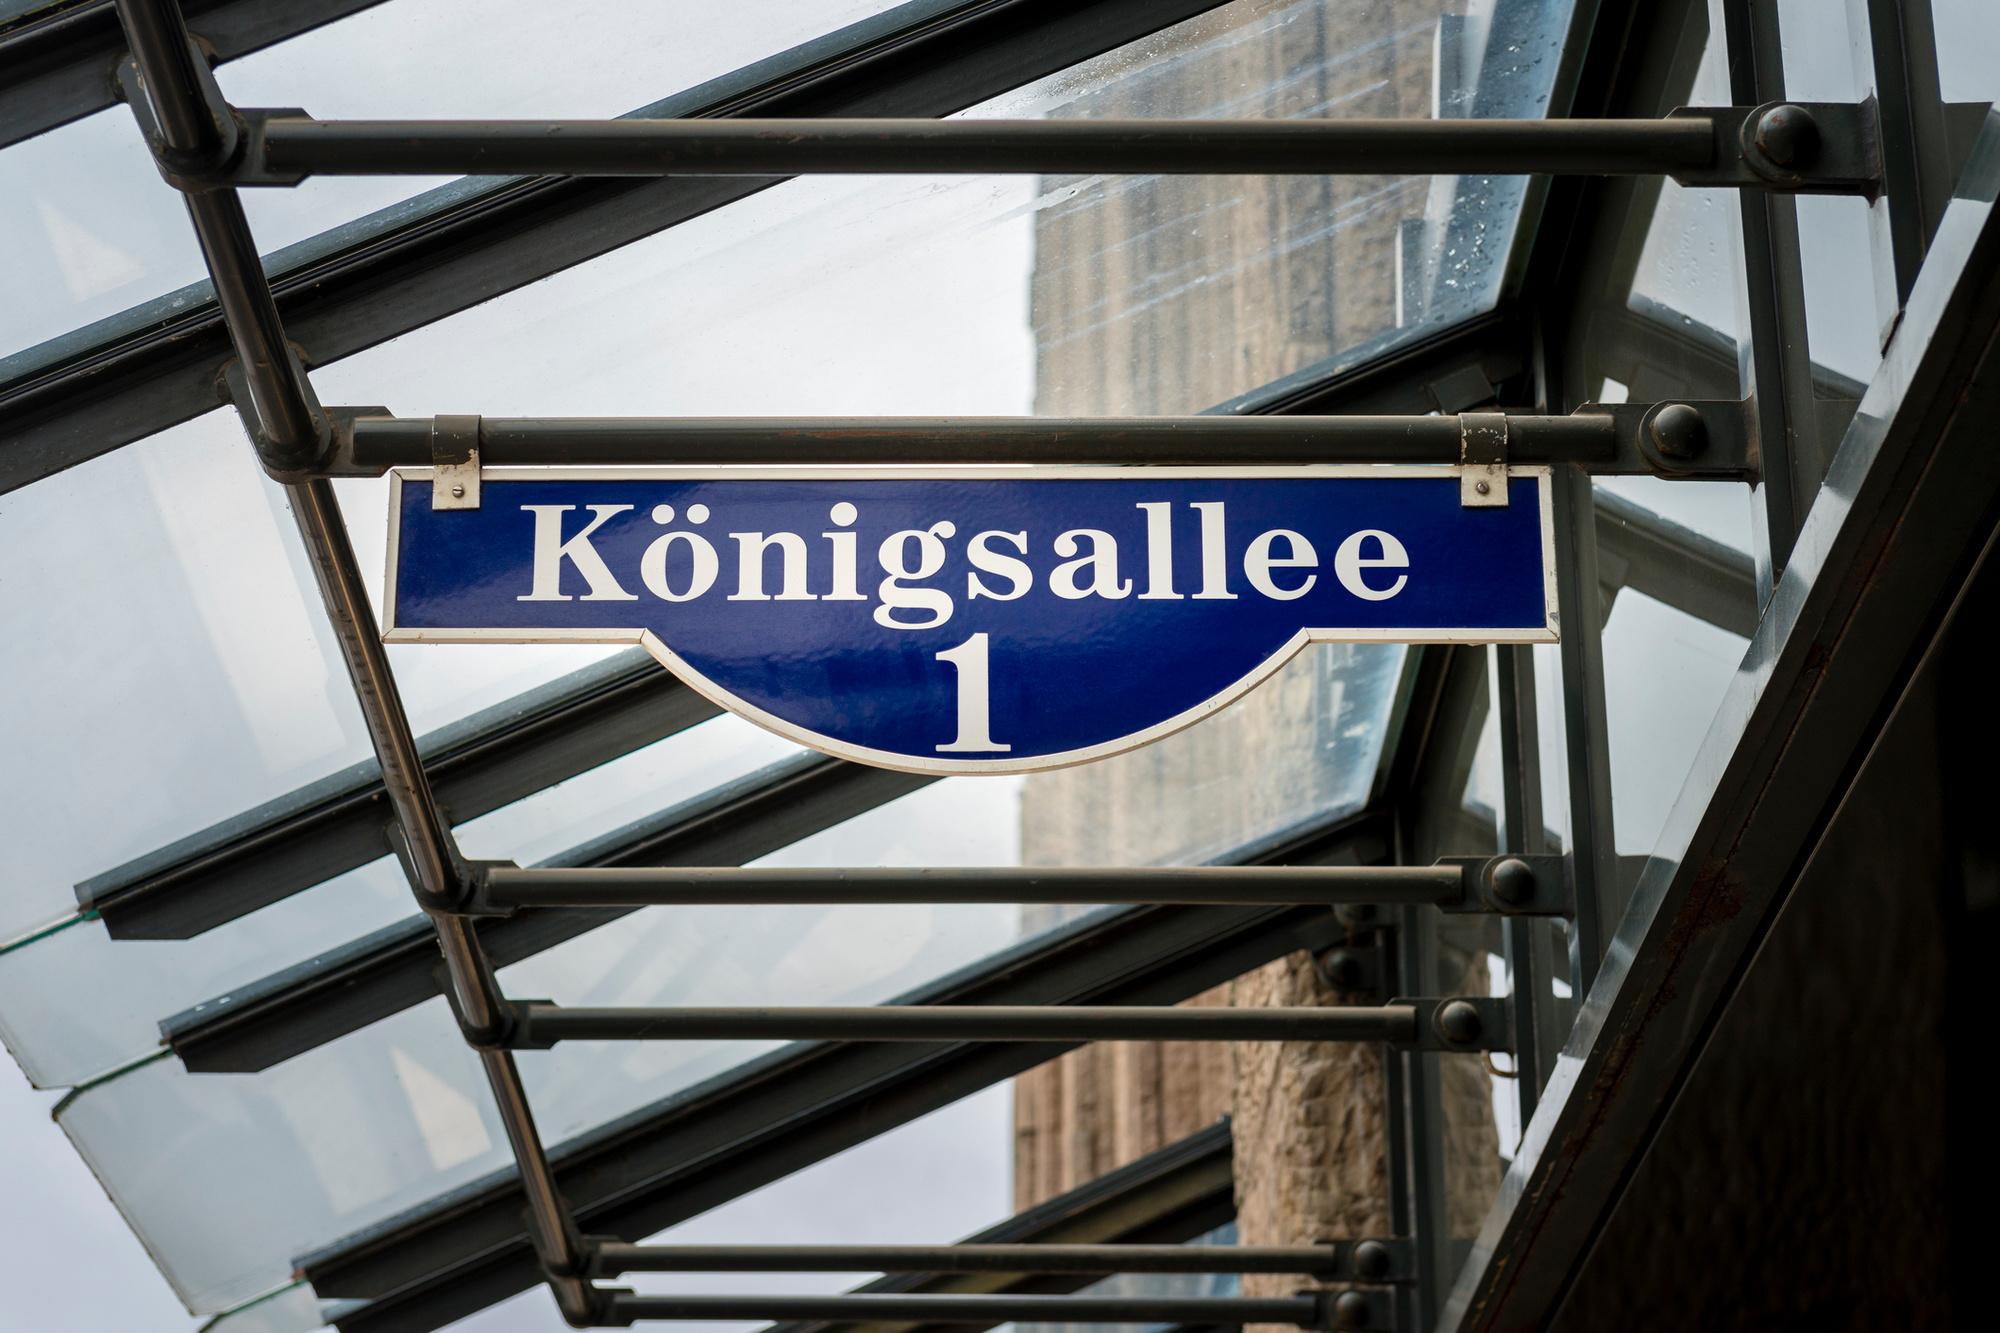 De Königsallee, beter bekend als de Kö, is een zeer stijlvolle winkelboulevard